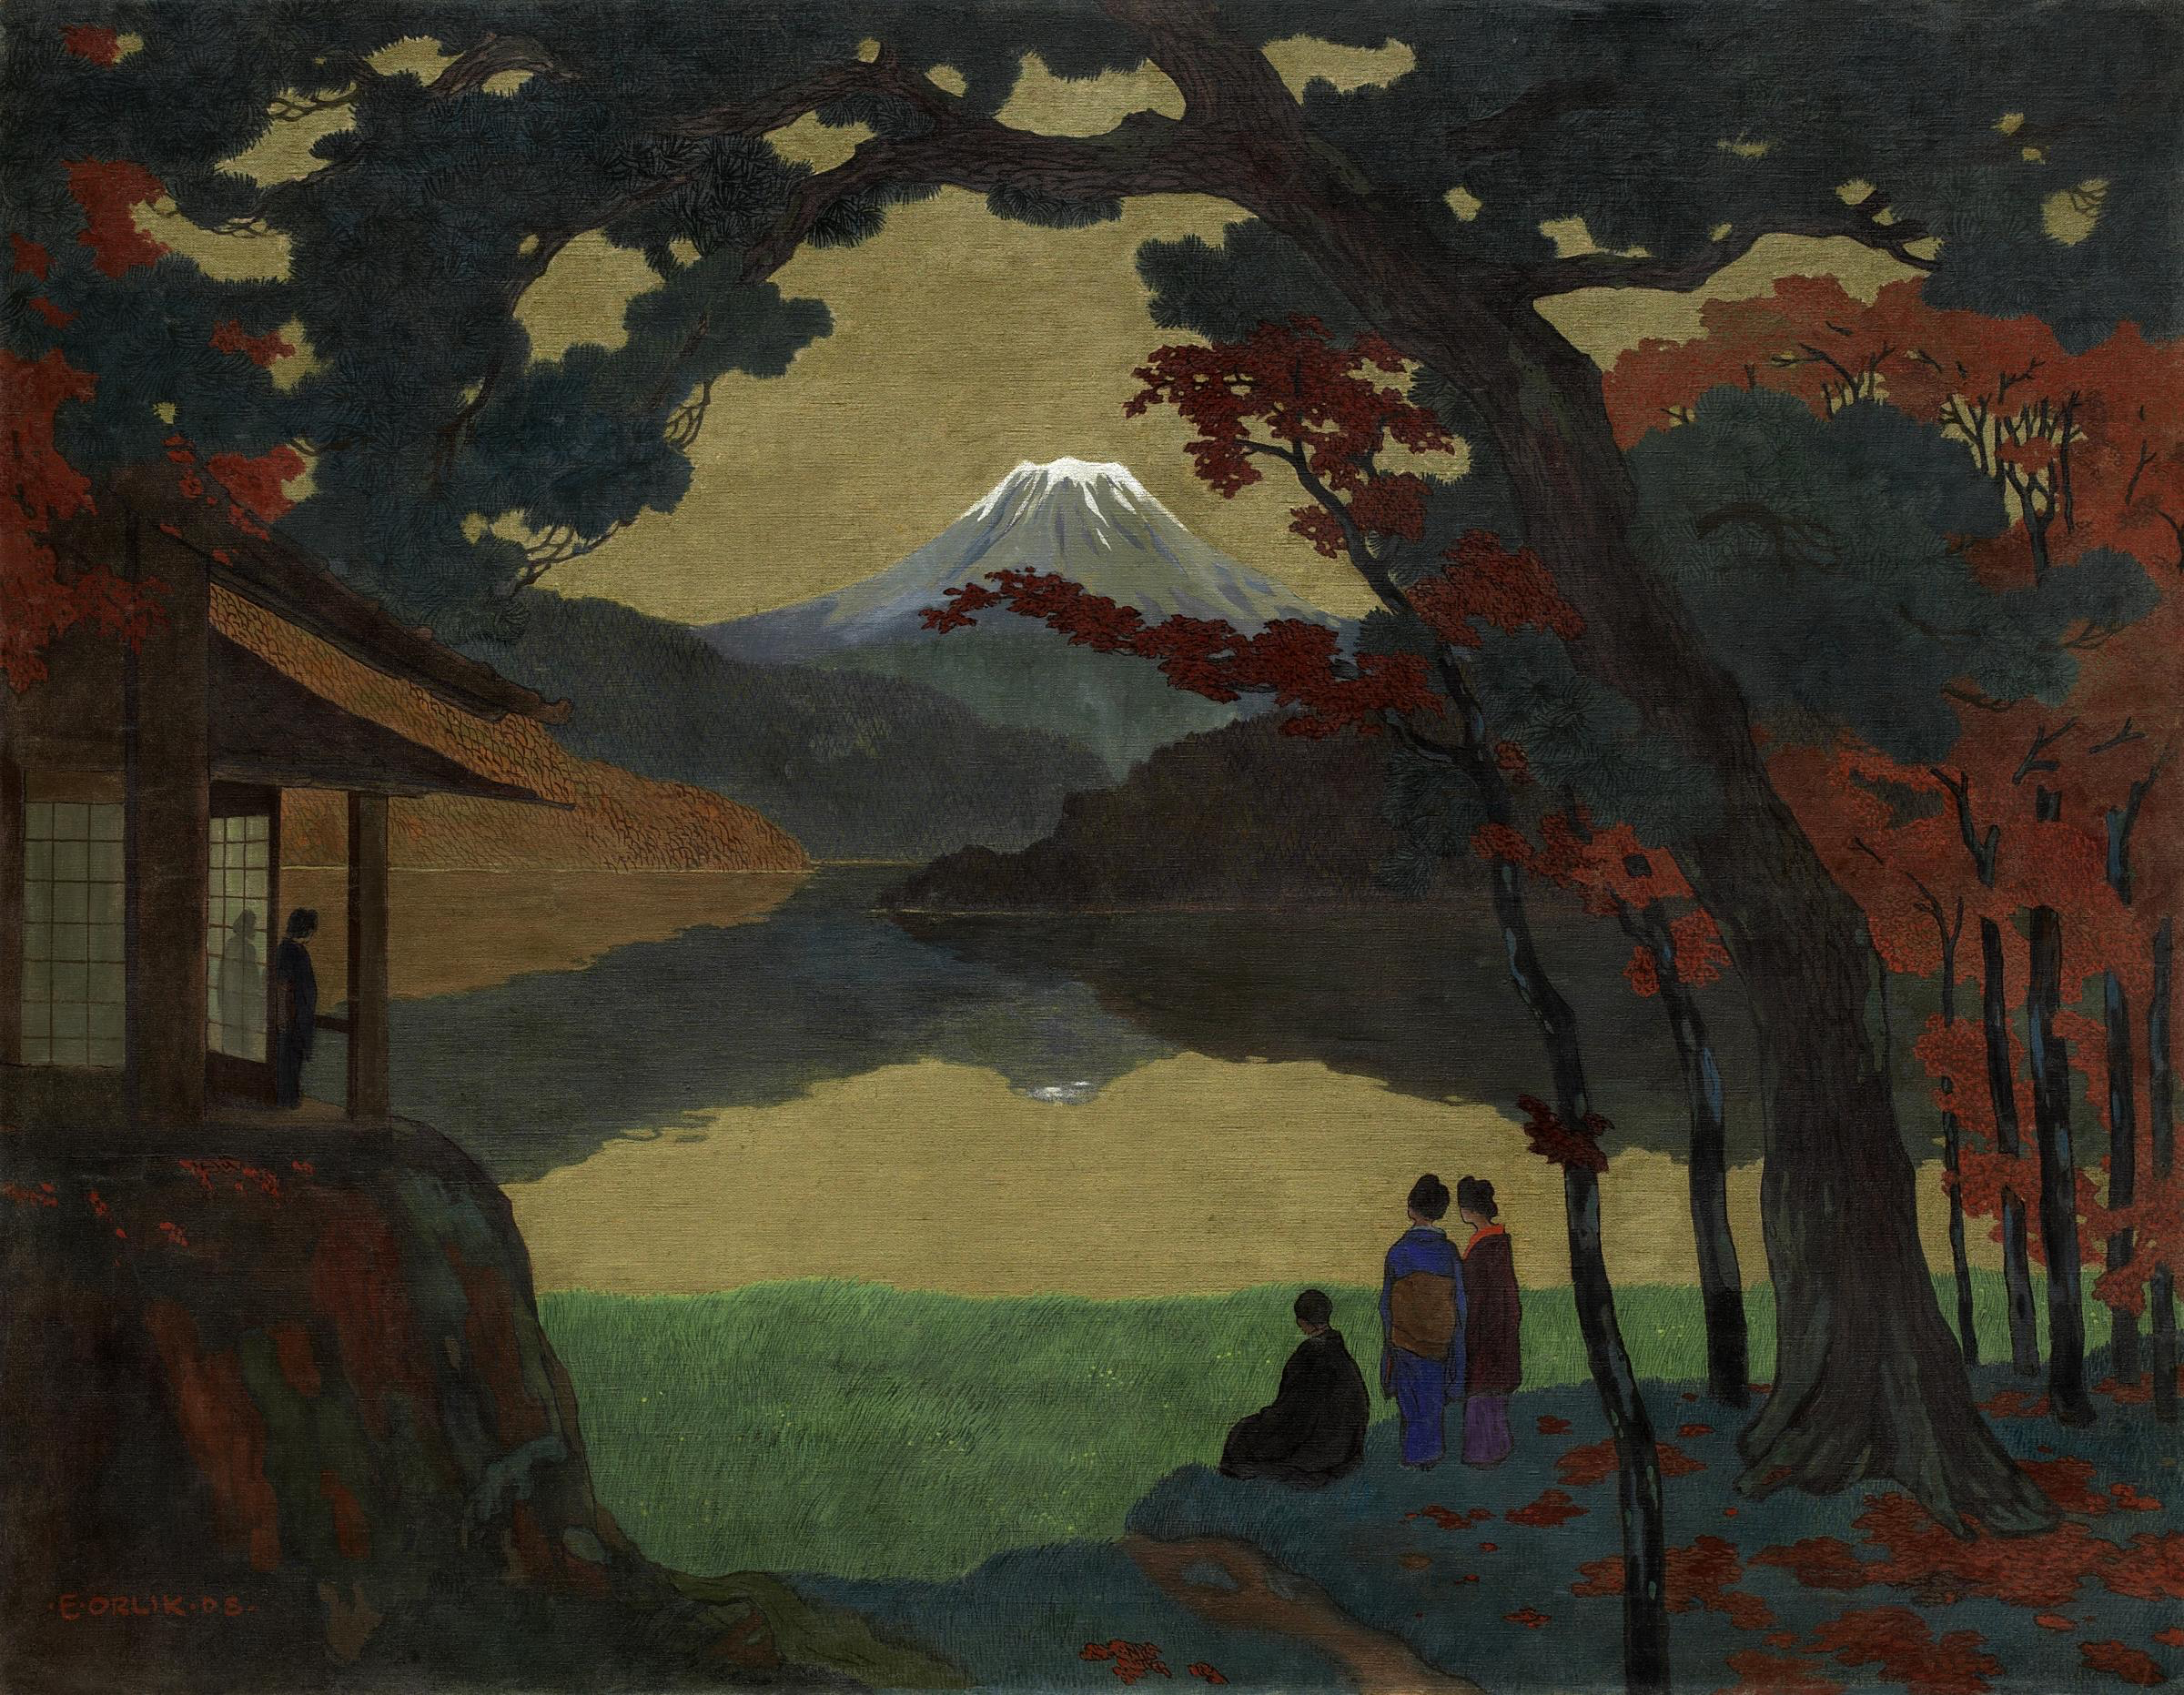 Uzaktaki Fuji Dağı Manzarası (orig. "Landscape With Mount Fuji in the Distance") by Emil Orlik - 1908 - 120.5 x 154.5 cm özel koleksiyon